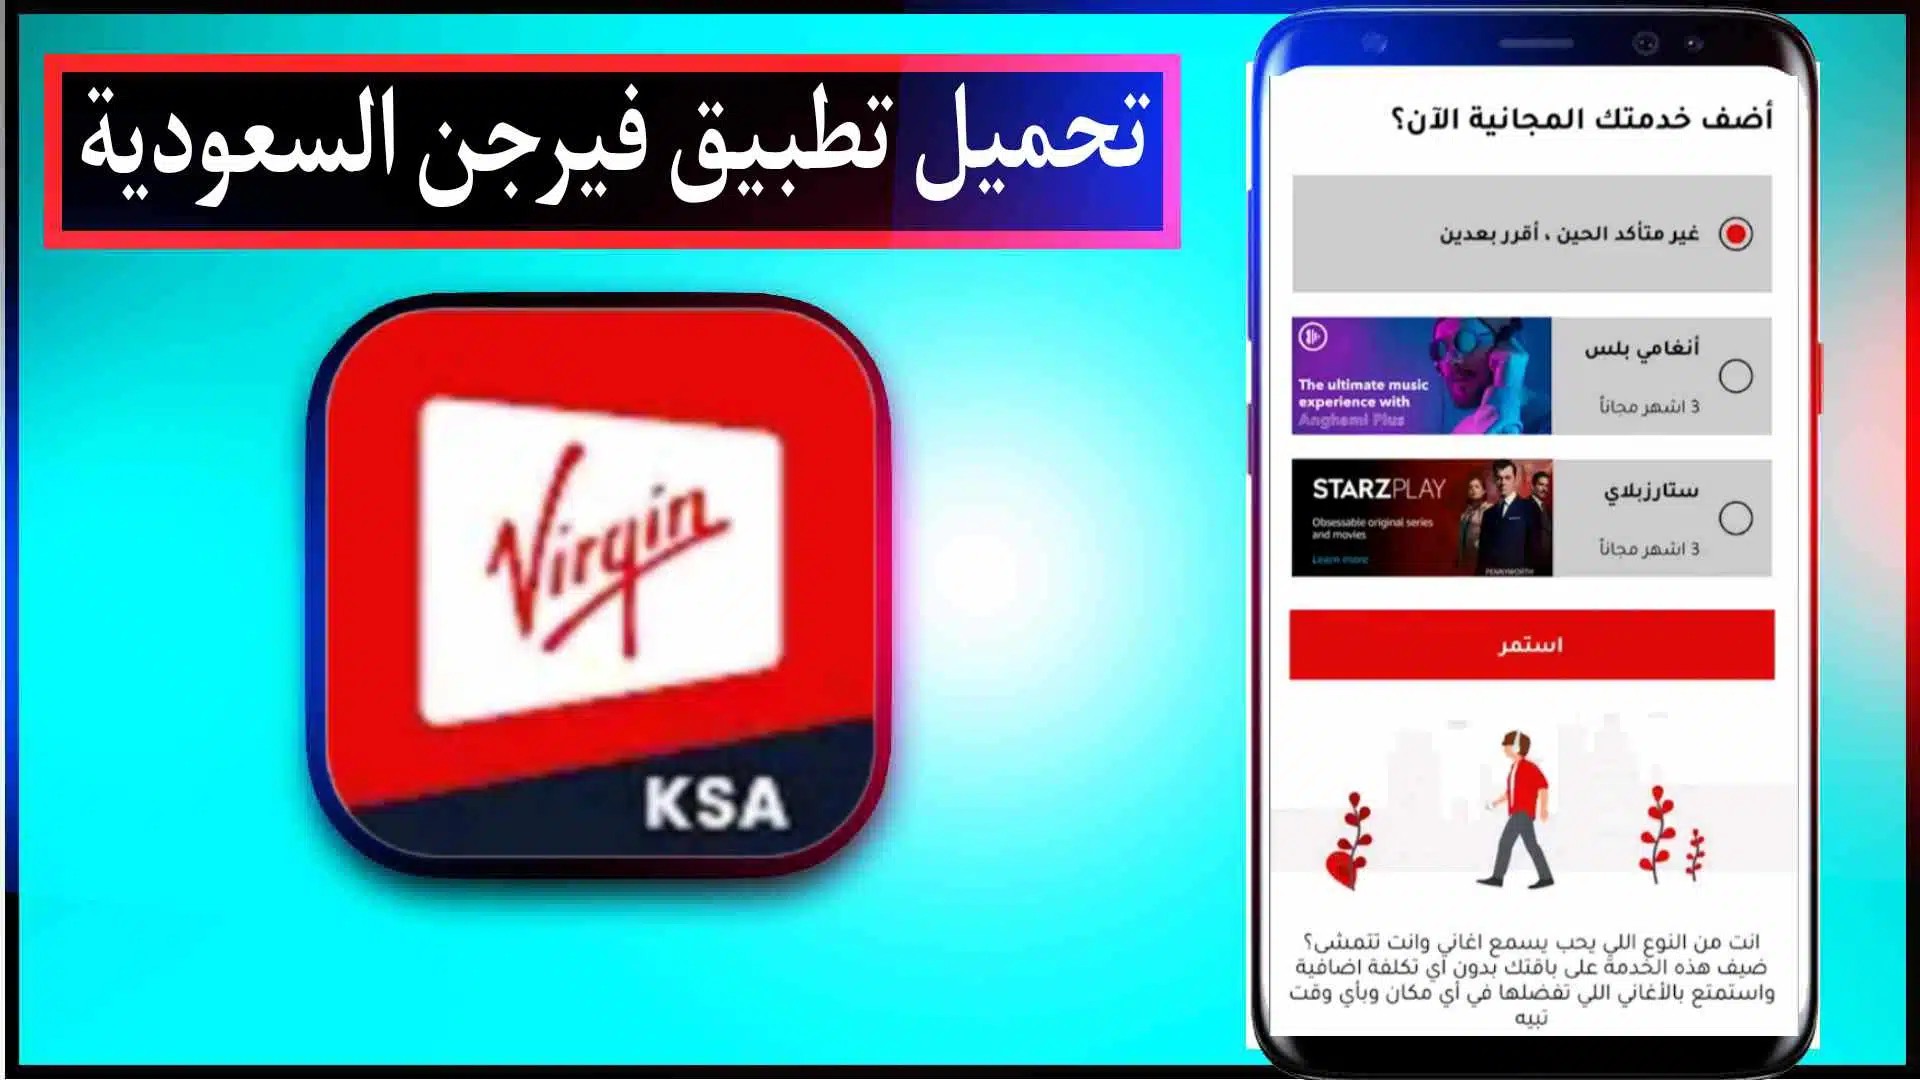 تحميل تطبيق فيرجن السعودية اخر اصدار للاندرويد وللايفون Virgin mobile KSA 1